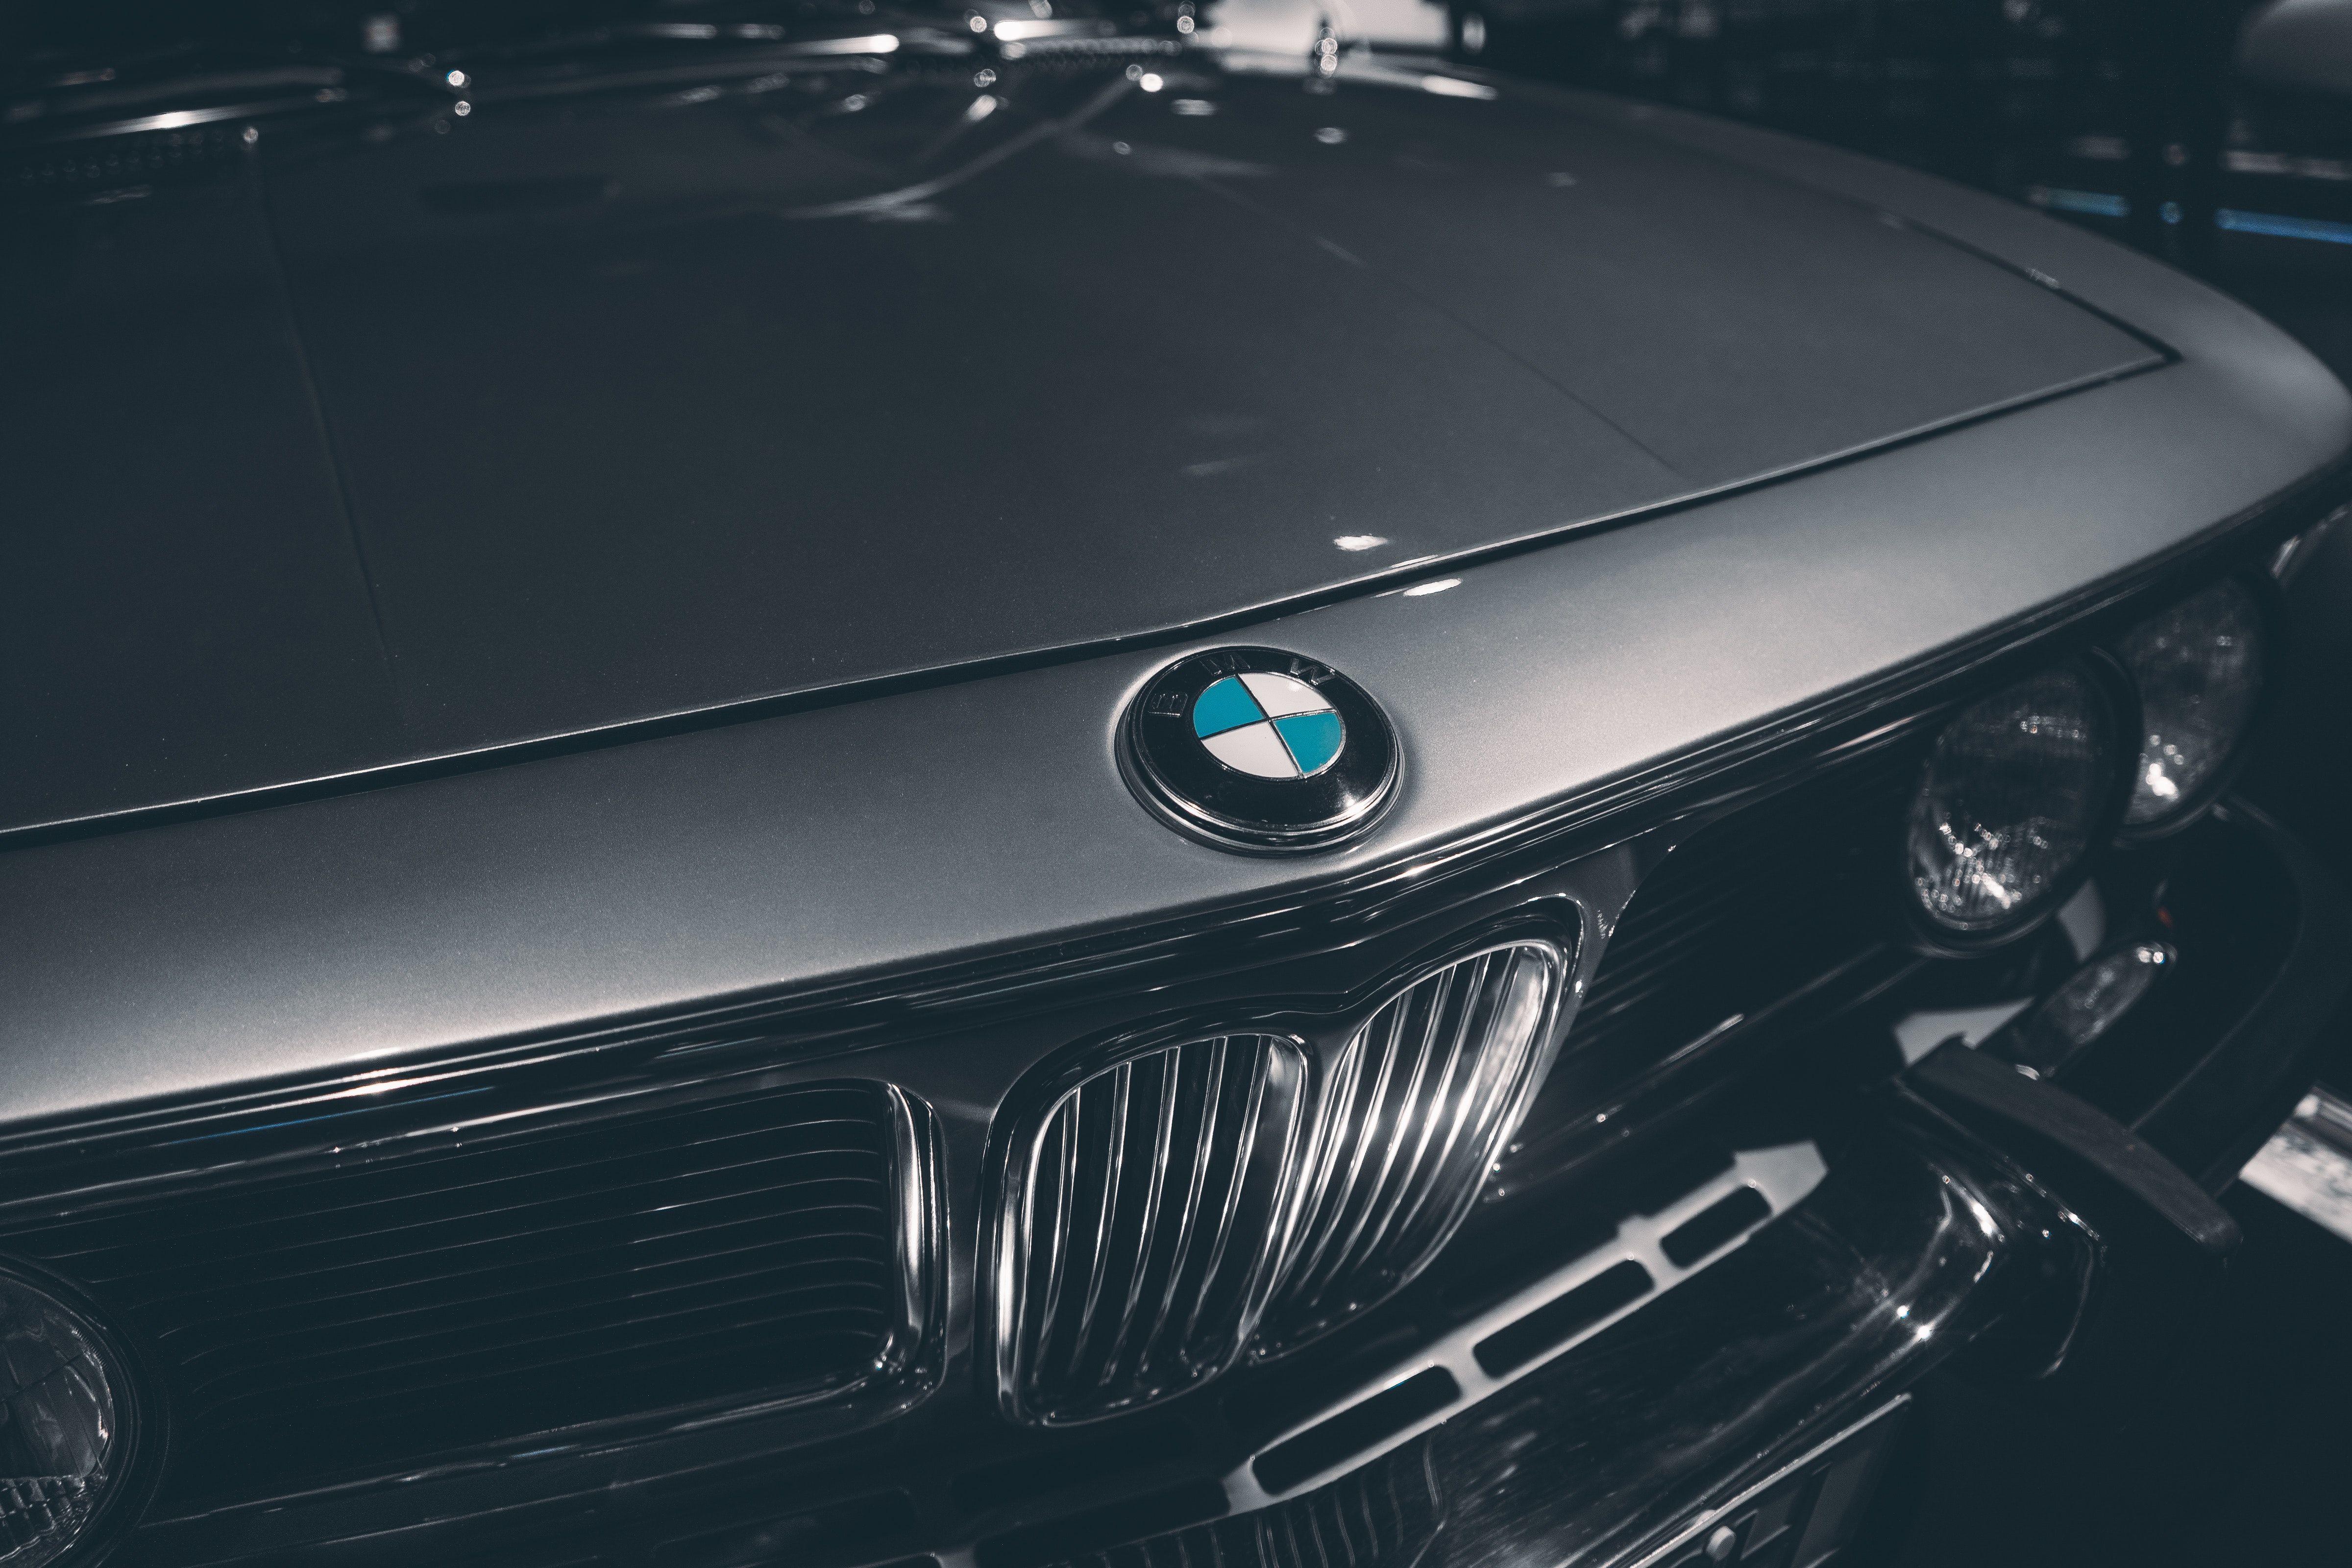  BMW Hintergrundbild 4800x3200. 1.Bmw Bilder Und Fotos · Kostenlos Downloaden · Stock Fotos